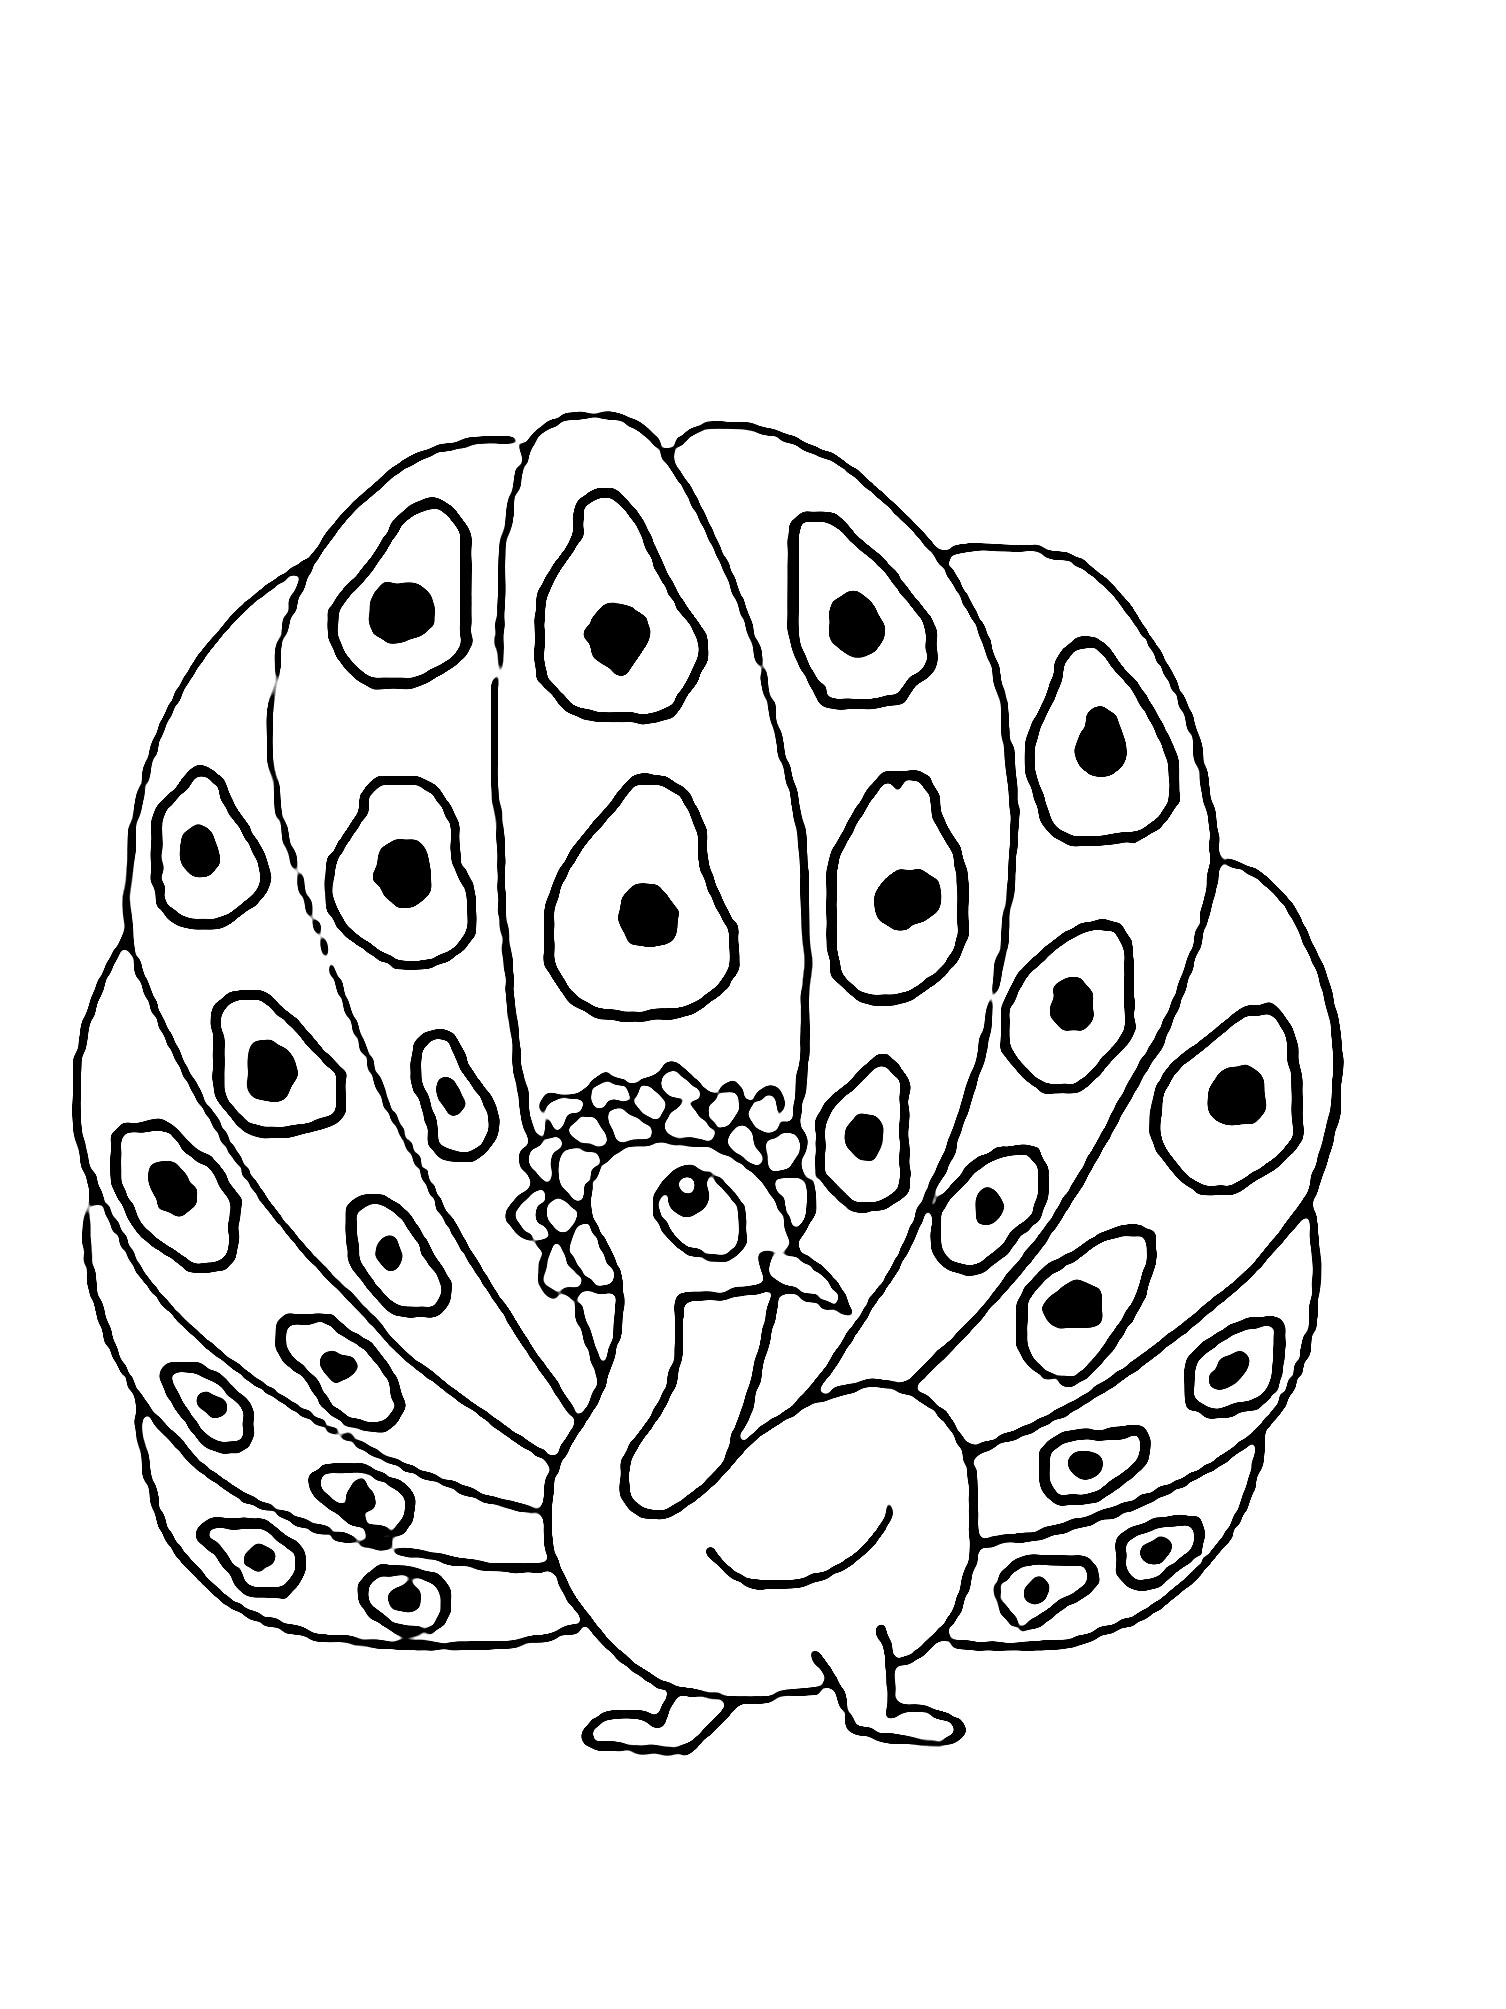 Desenho do pavão para descarregar e imprimir para crianças